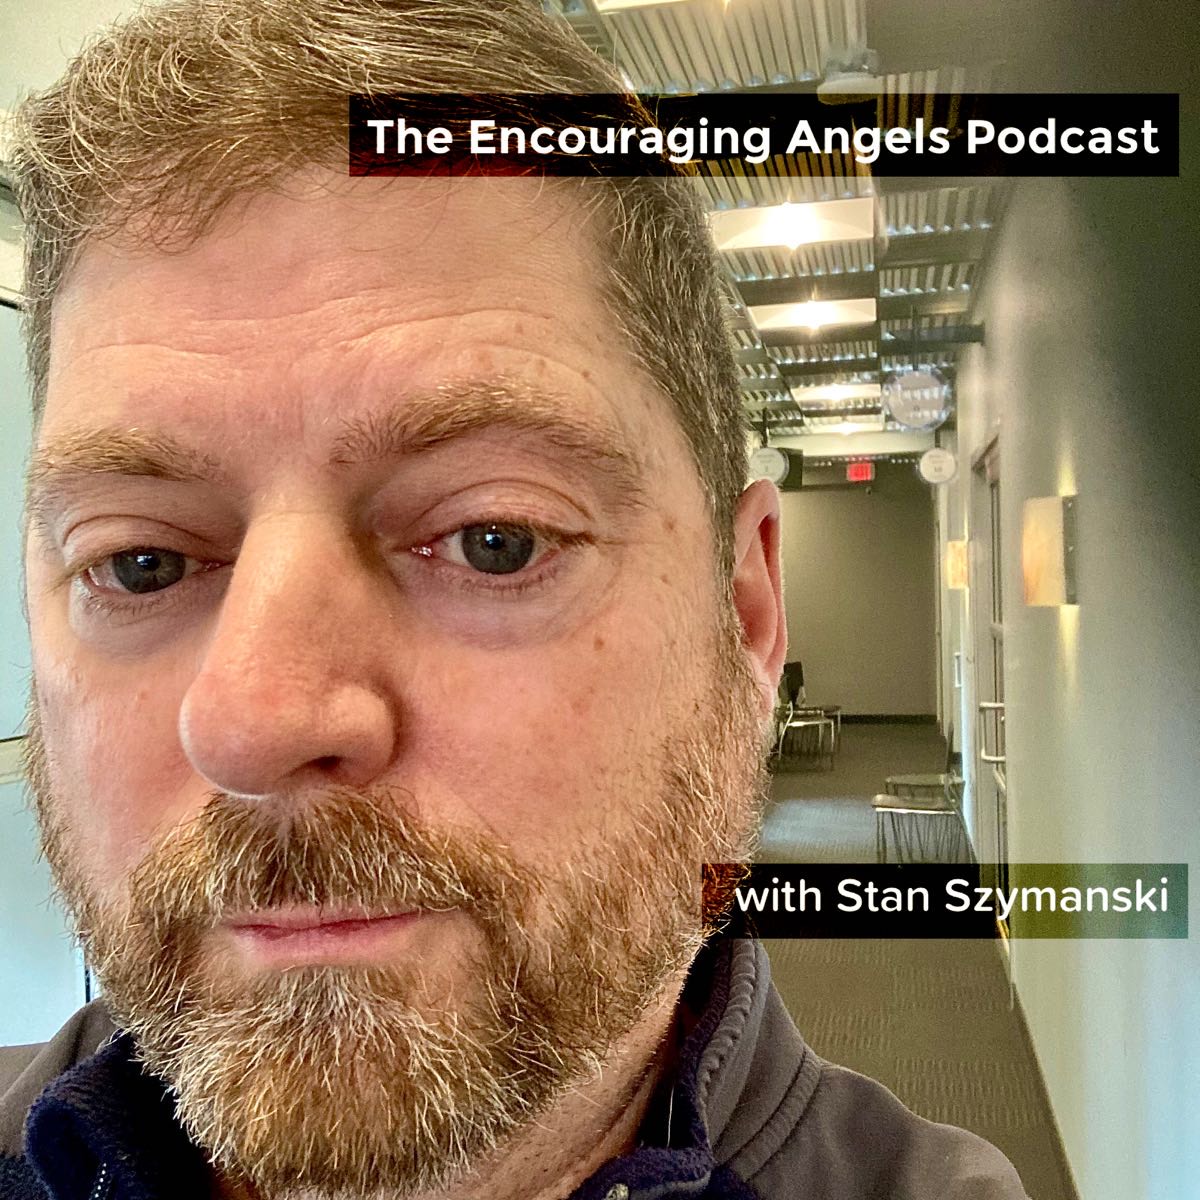 The Encouraging Angels Podcast with Stan Szymanski